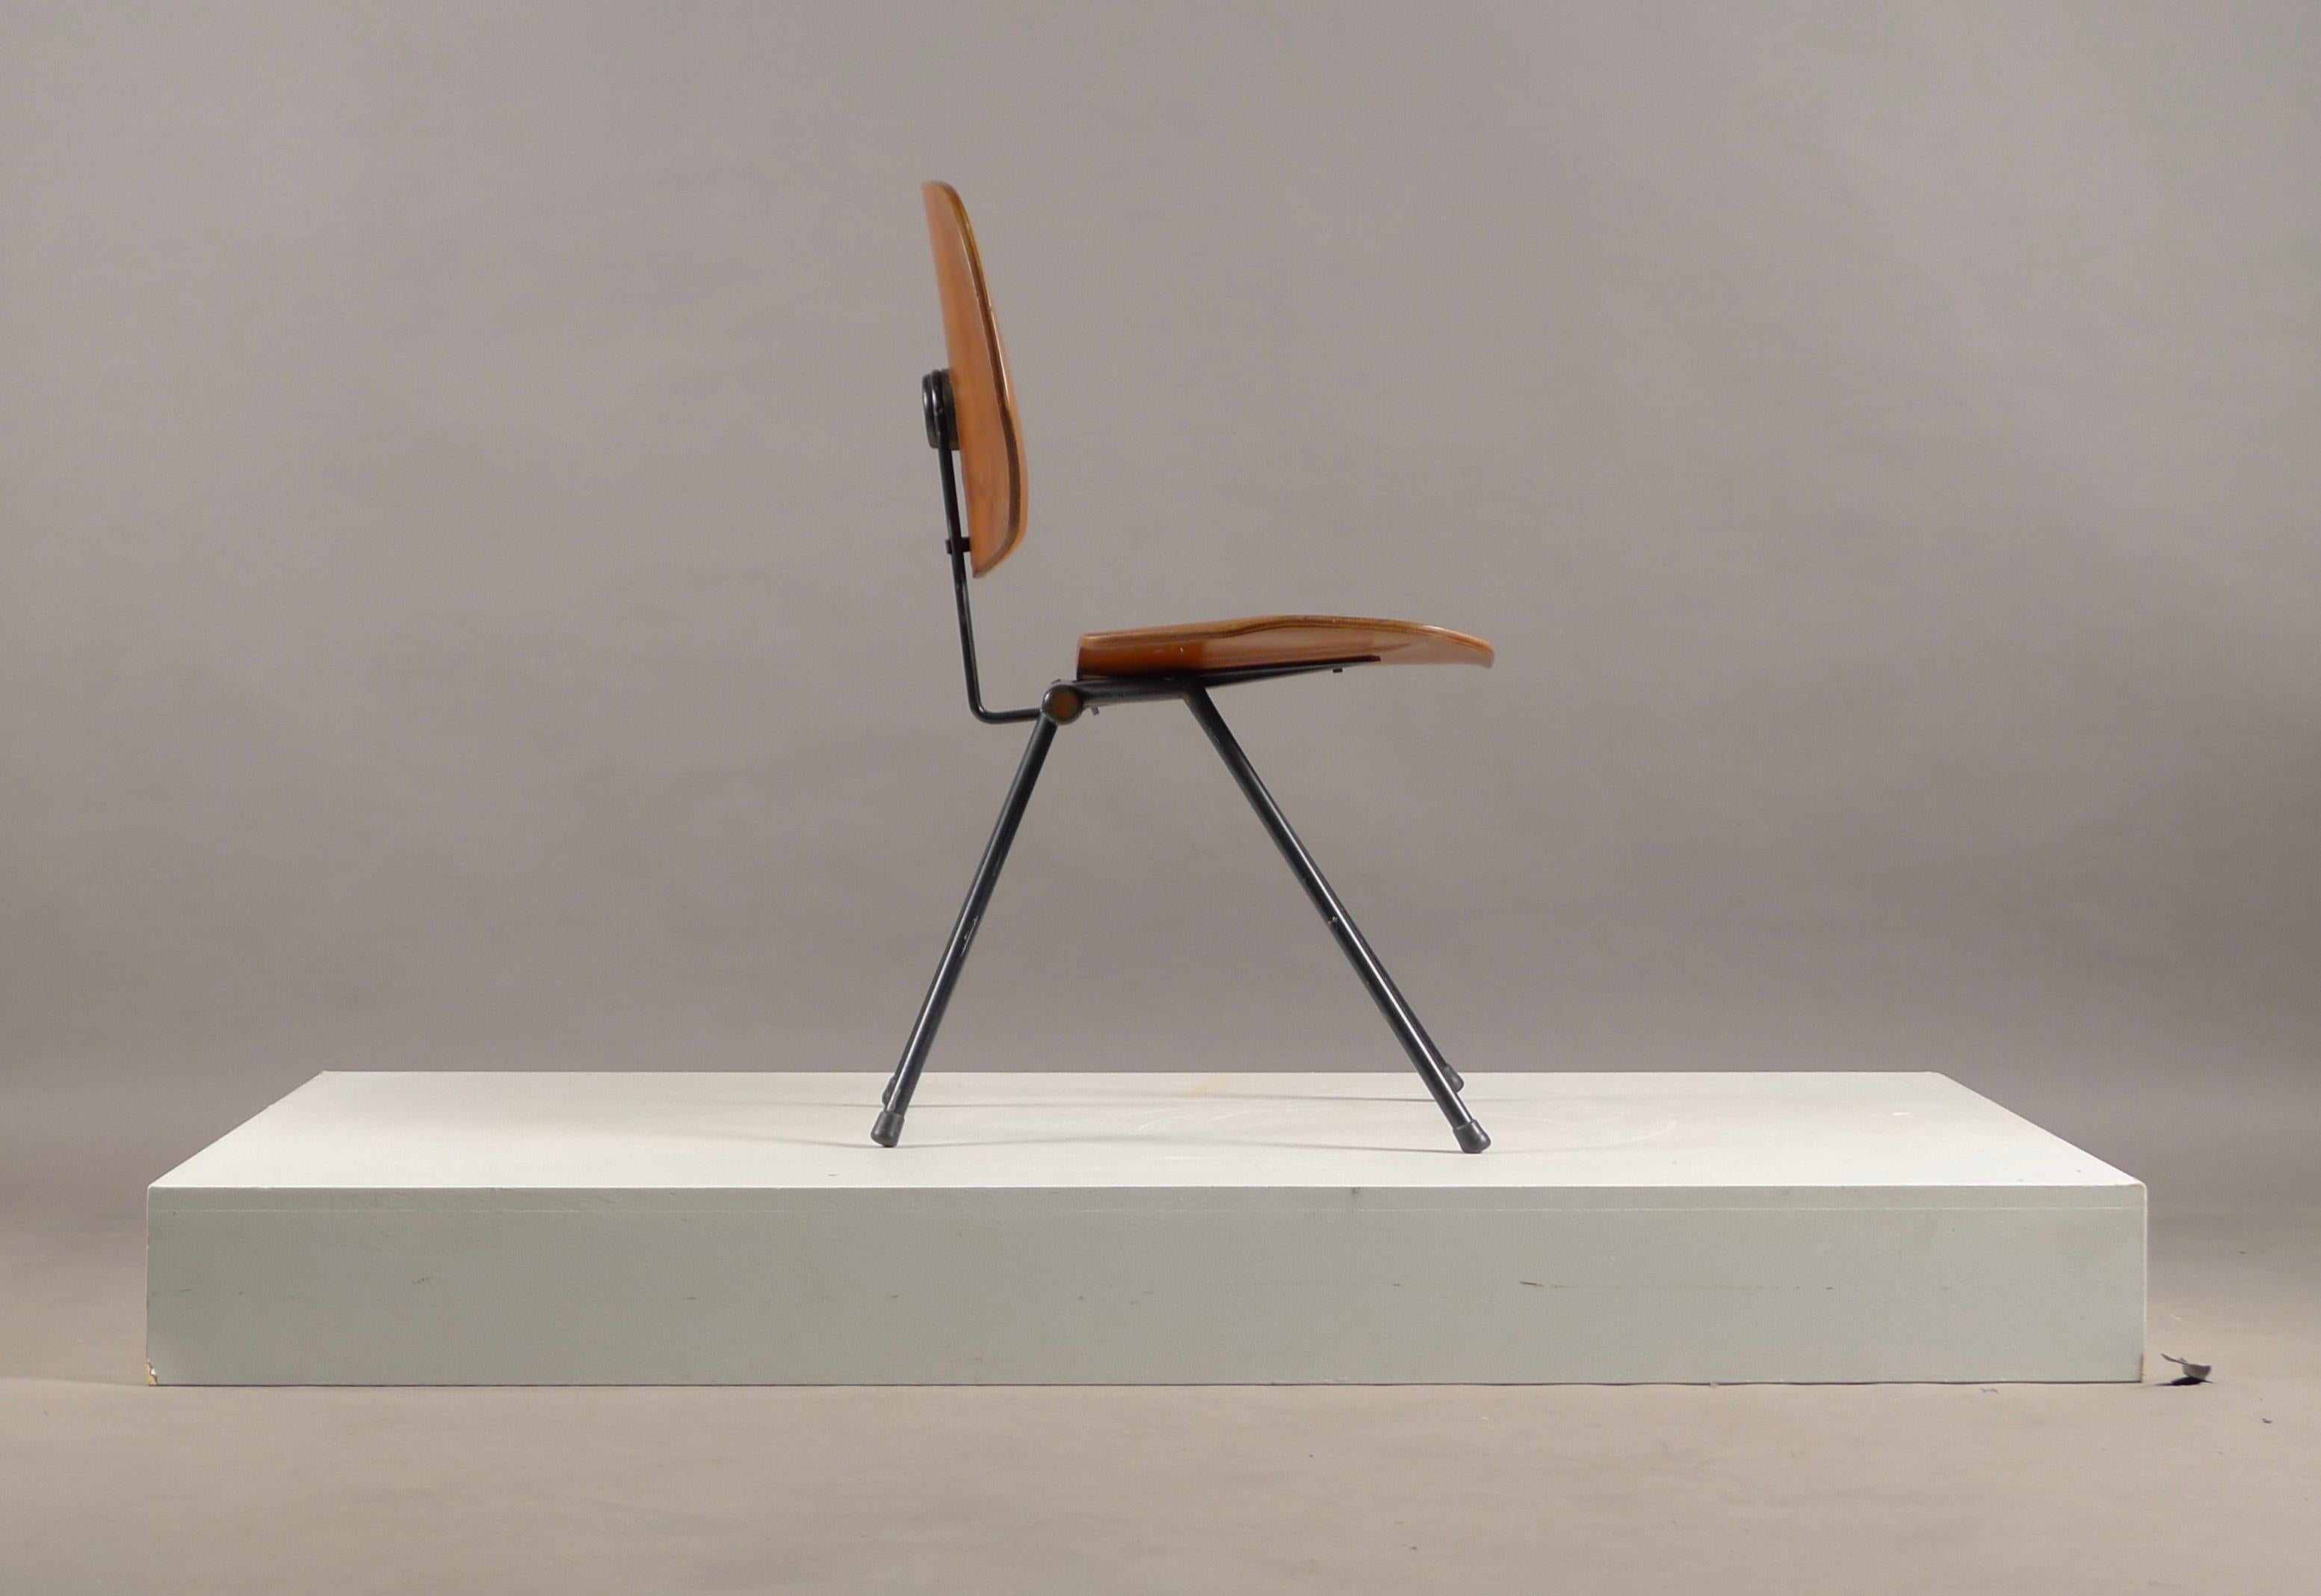 Mid-Century Modern Osvaldo Borsani for Tecno, Italy, S88 Folding Chair, Labelled by Maker, 1950